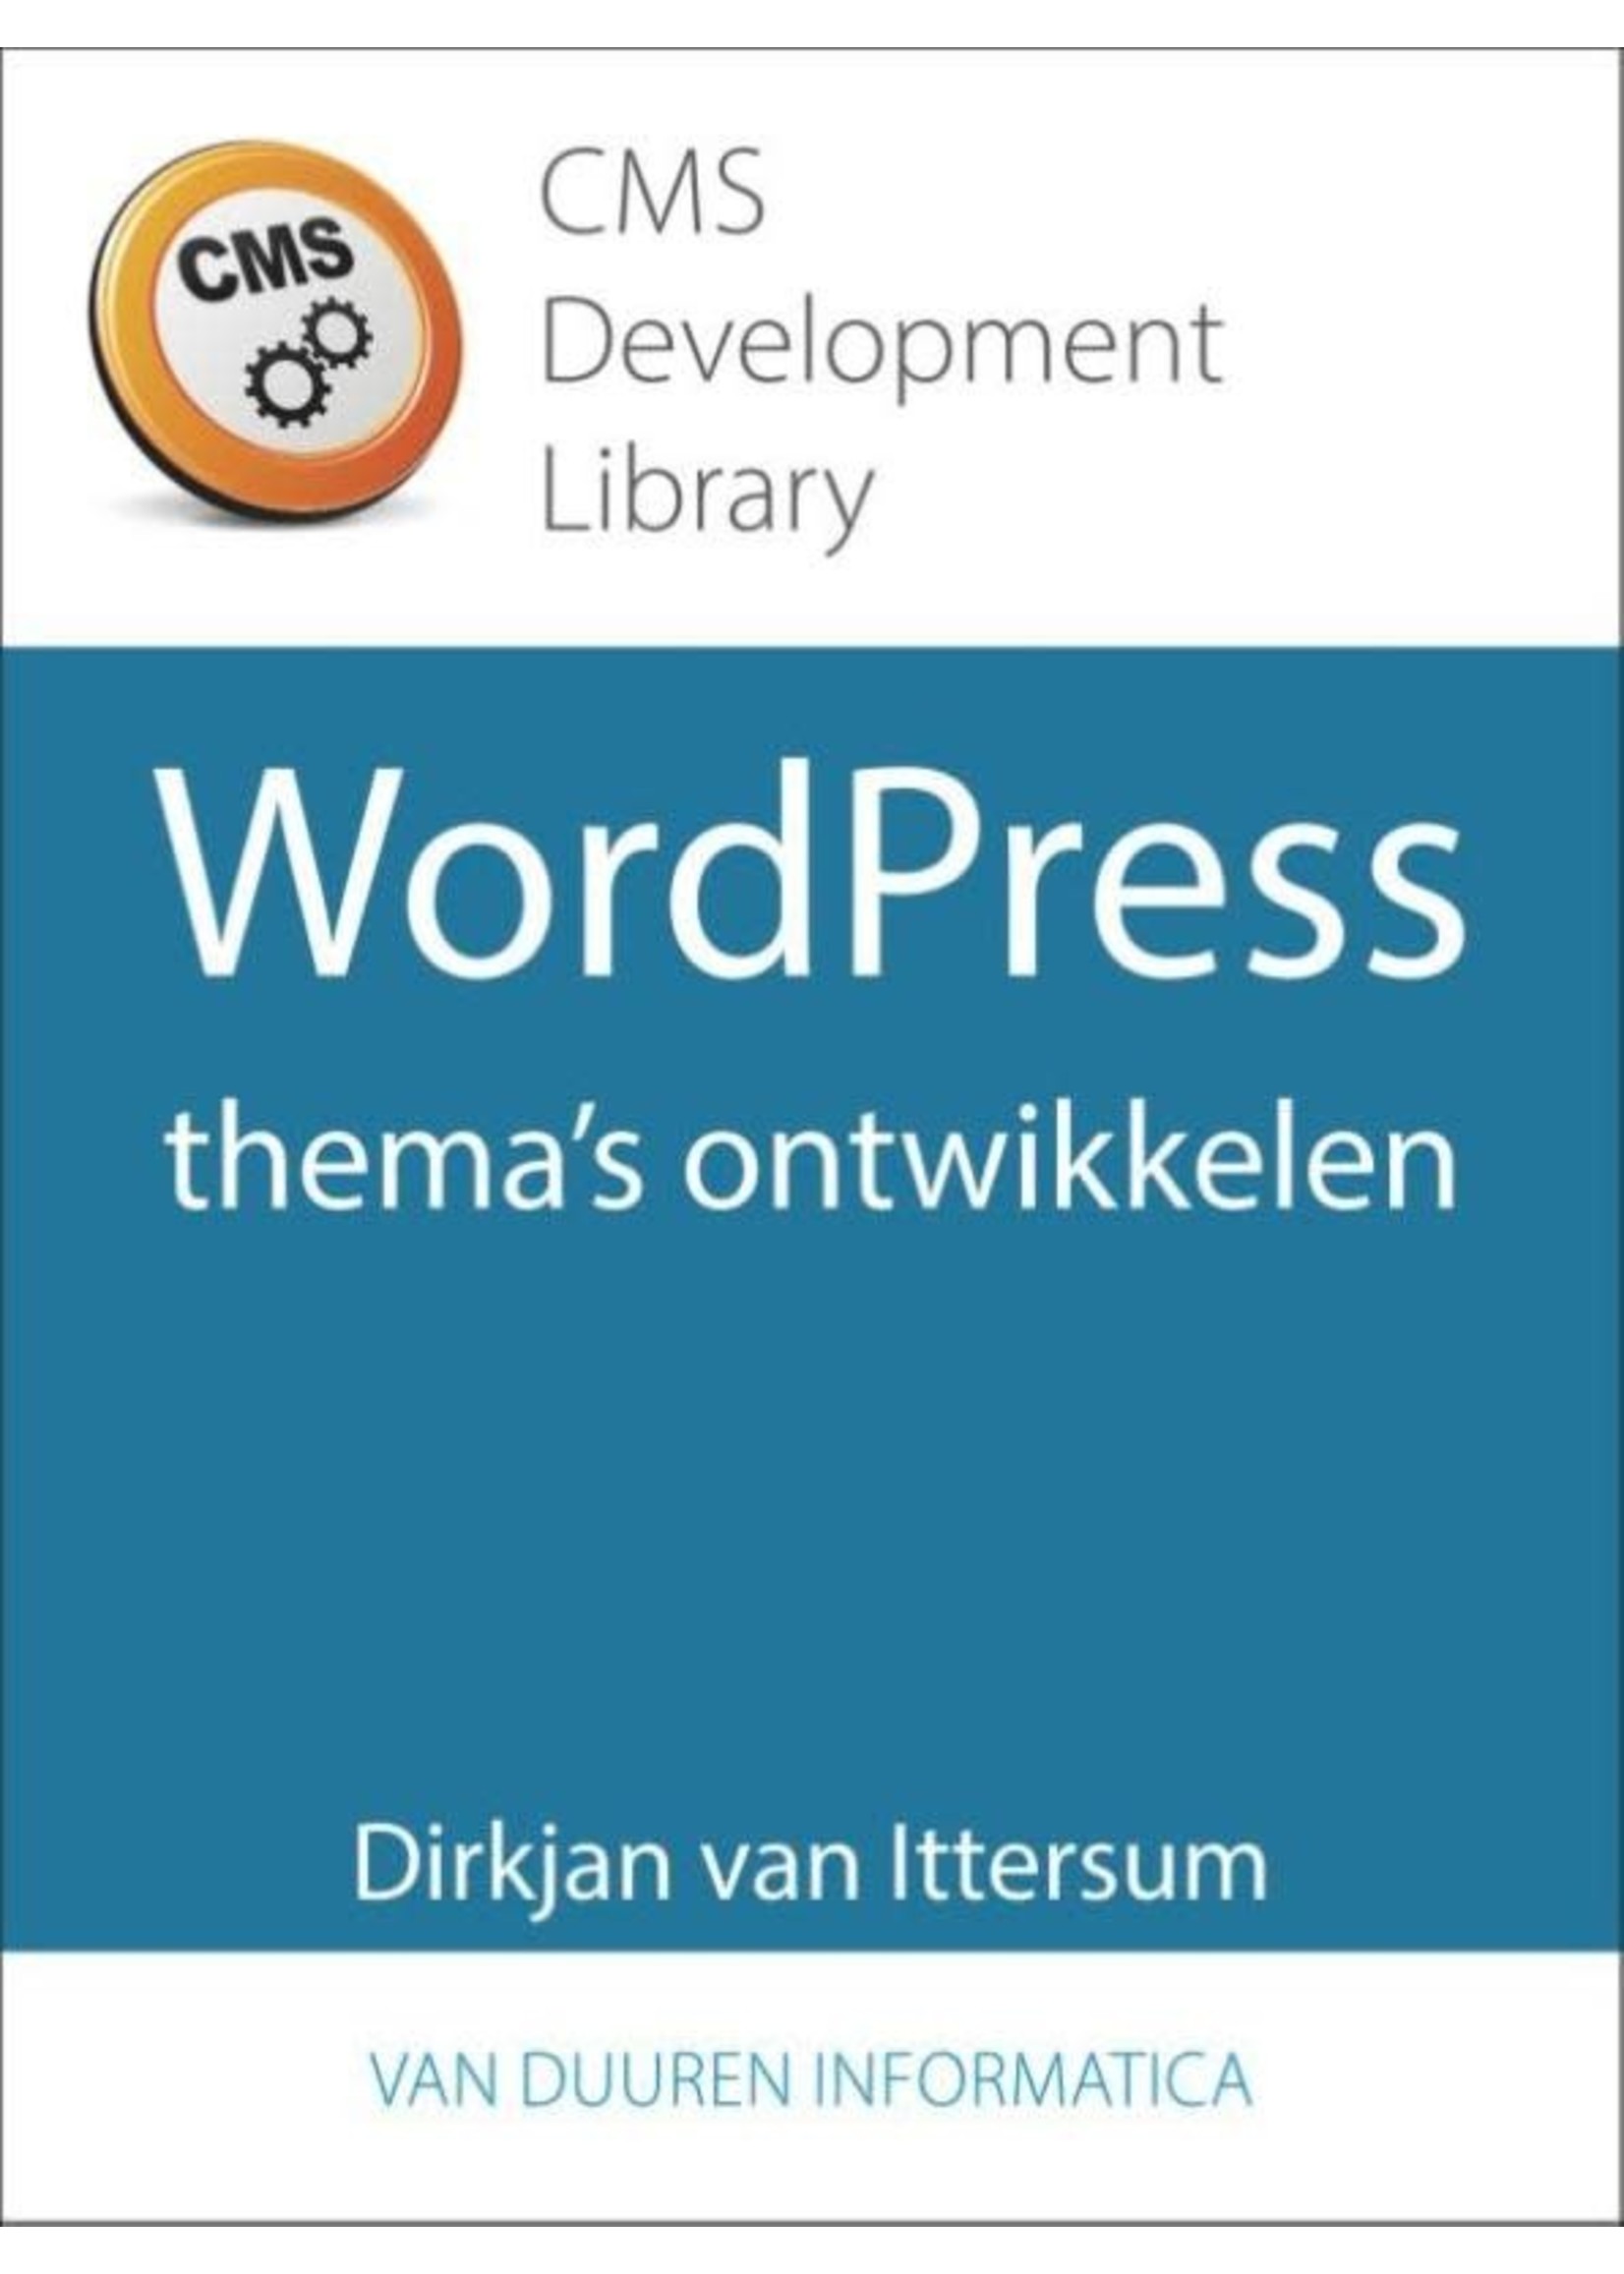 Boek WordPress-thema's ontwikkelen - Dirkjan van Ittersum - CMS Development Library - 9789059408418